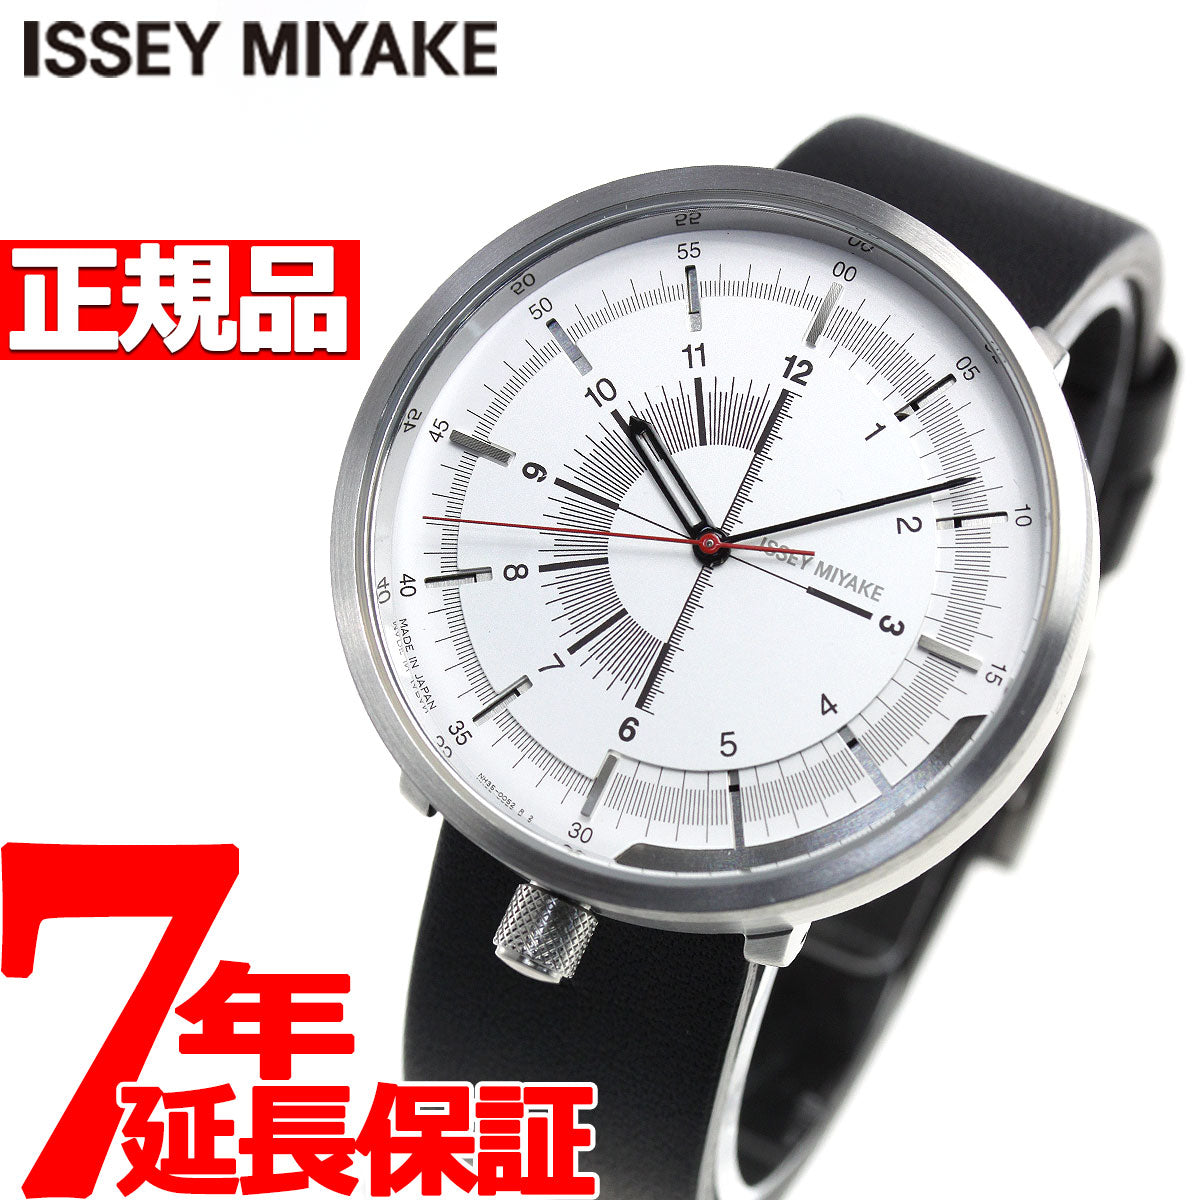 イッセイミヤケ ISSEY MIYAKE 腕時計 時計 メンズ レディース 1/6 ワンシックス 田村奈穂デザイン NYAK004